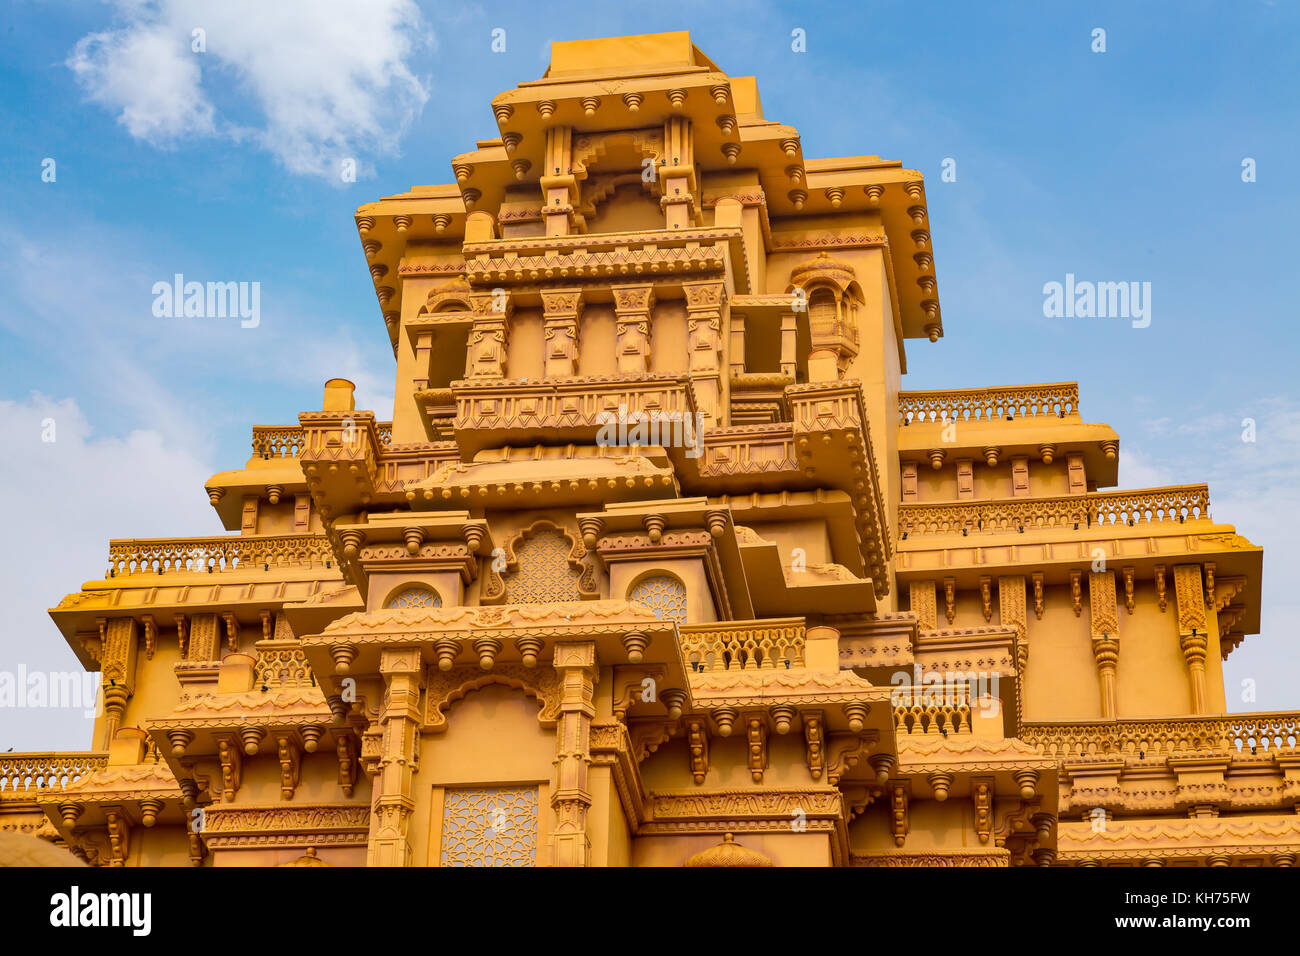 Durga tempio costruito per replicare una india Royal Palace a Durga puja in nord kolkata Foto Stock